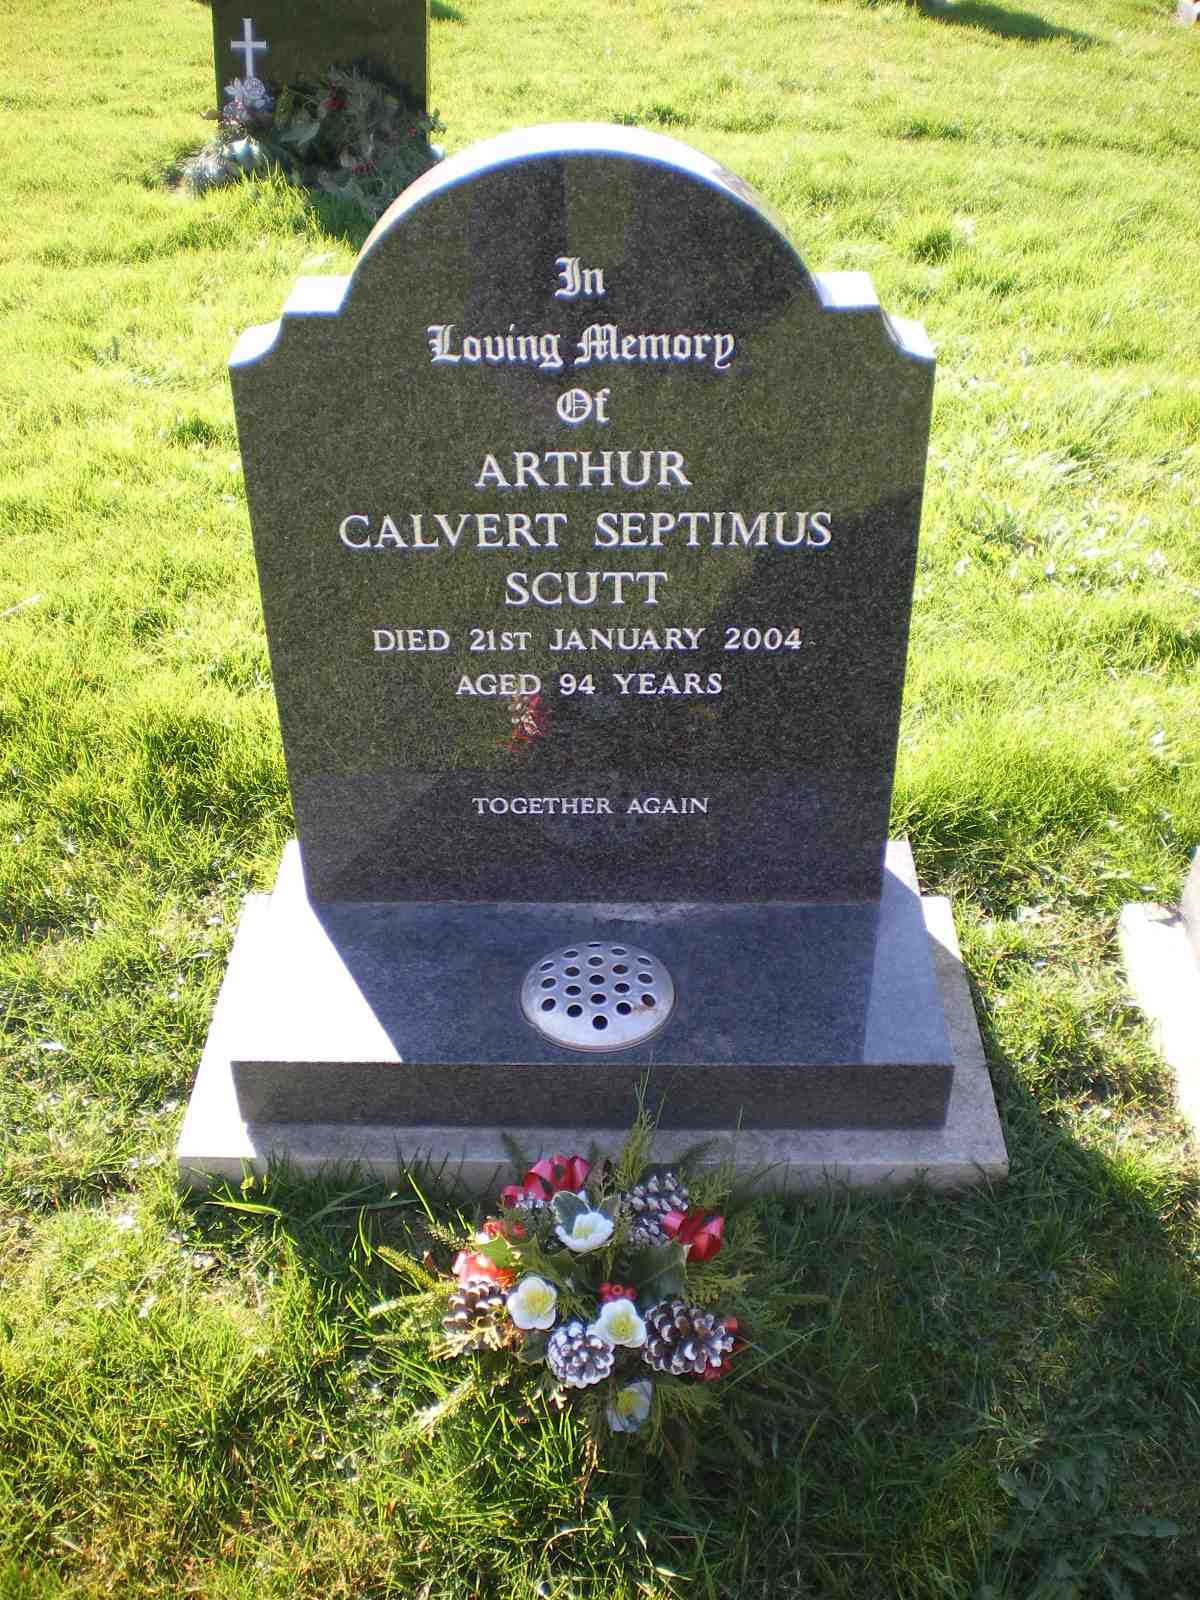 Arthur Calvert Septimus Scutt